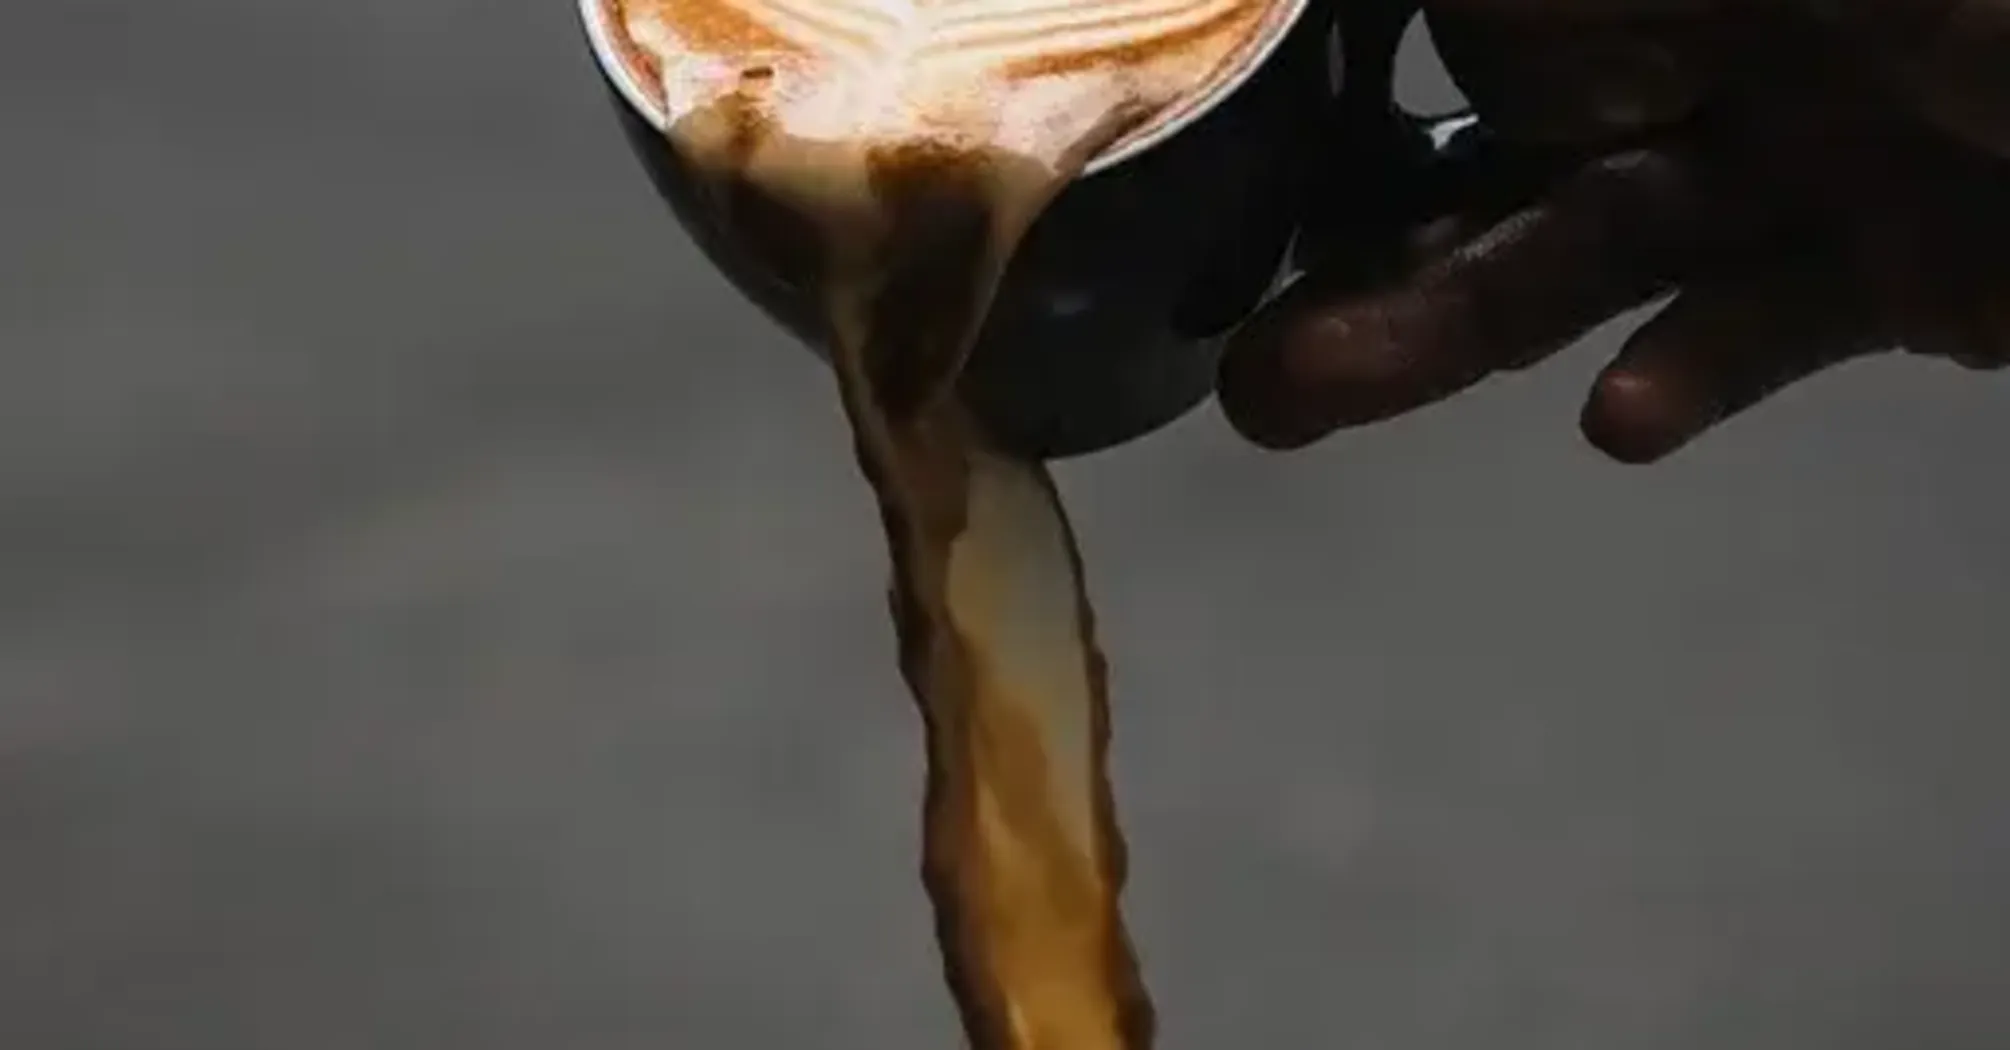 Какие особенности скрывает кофе